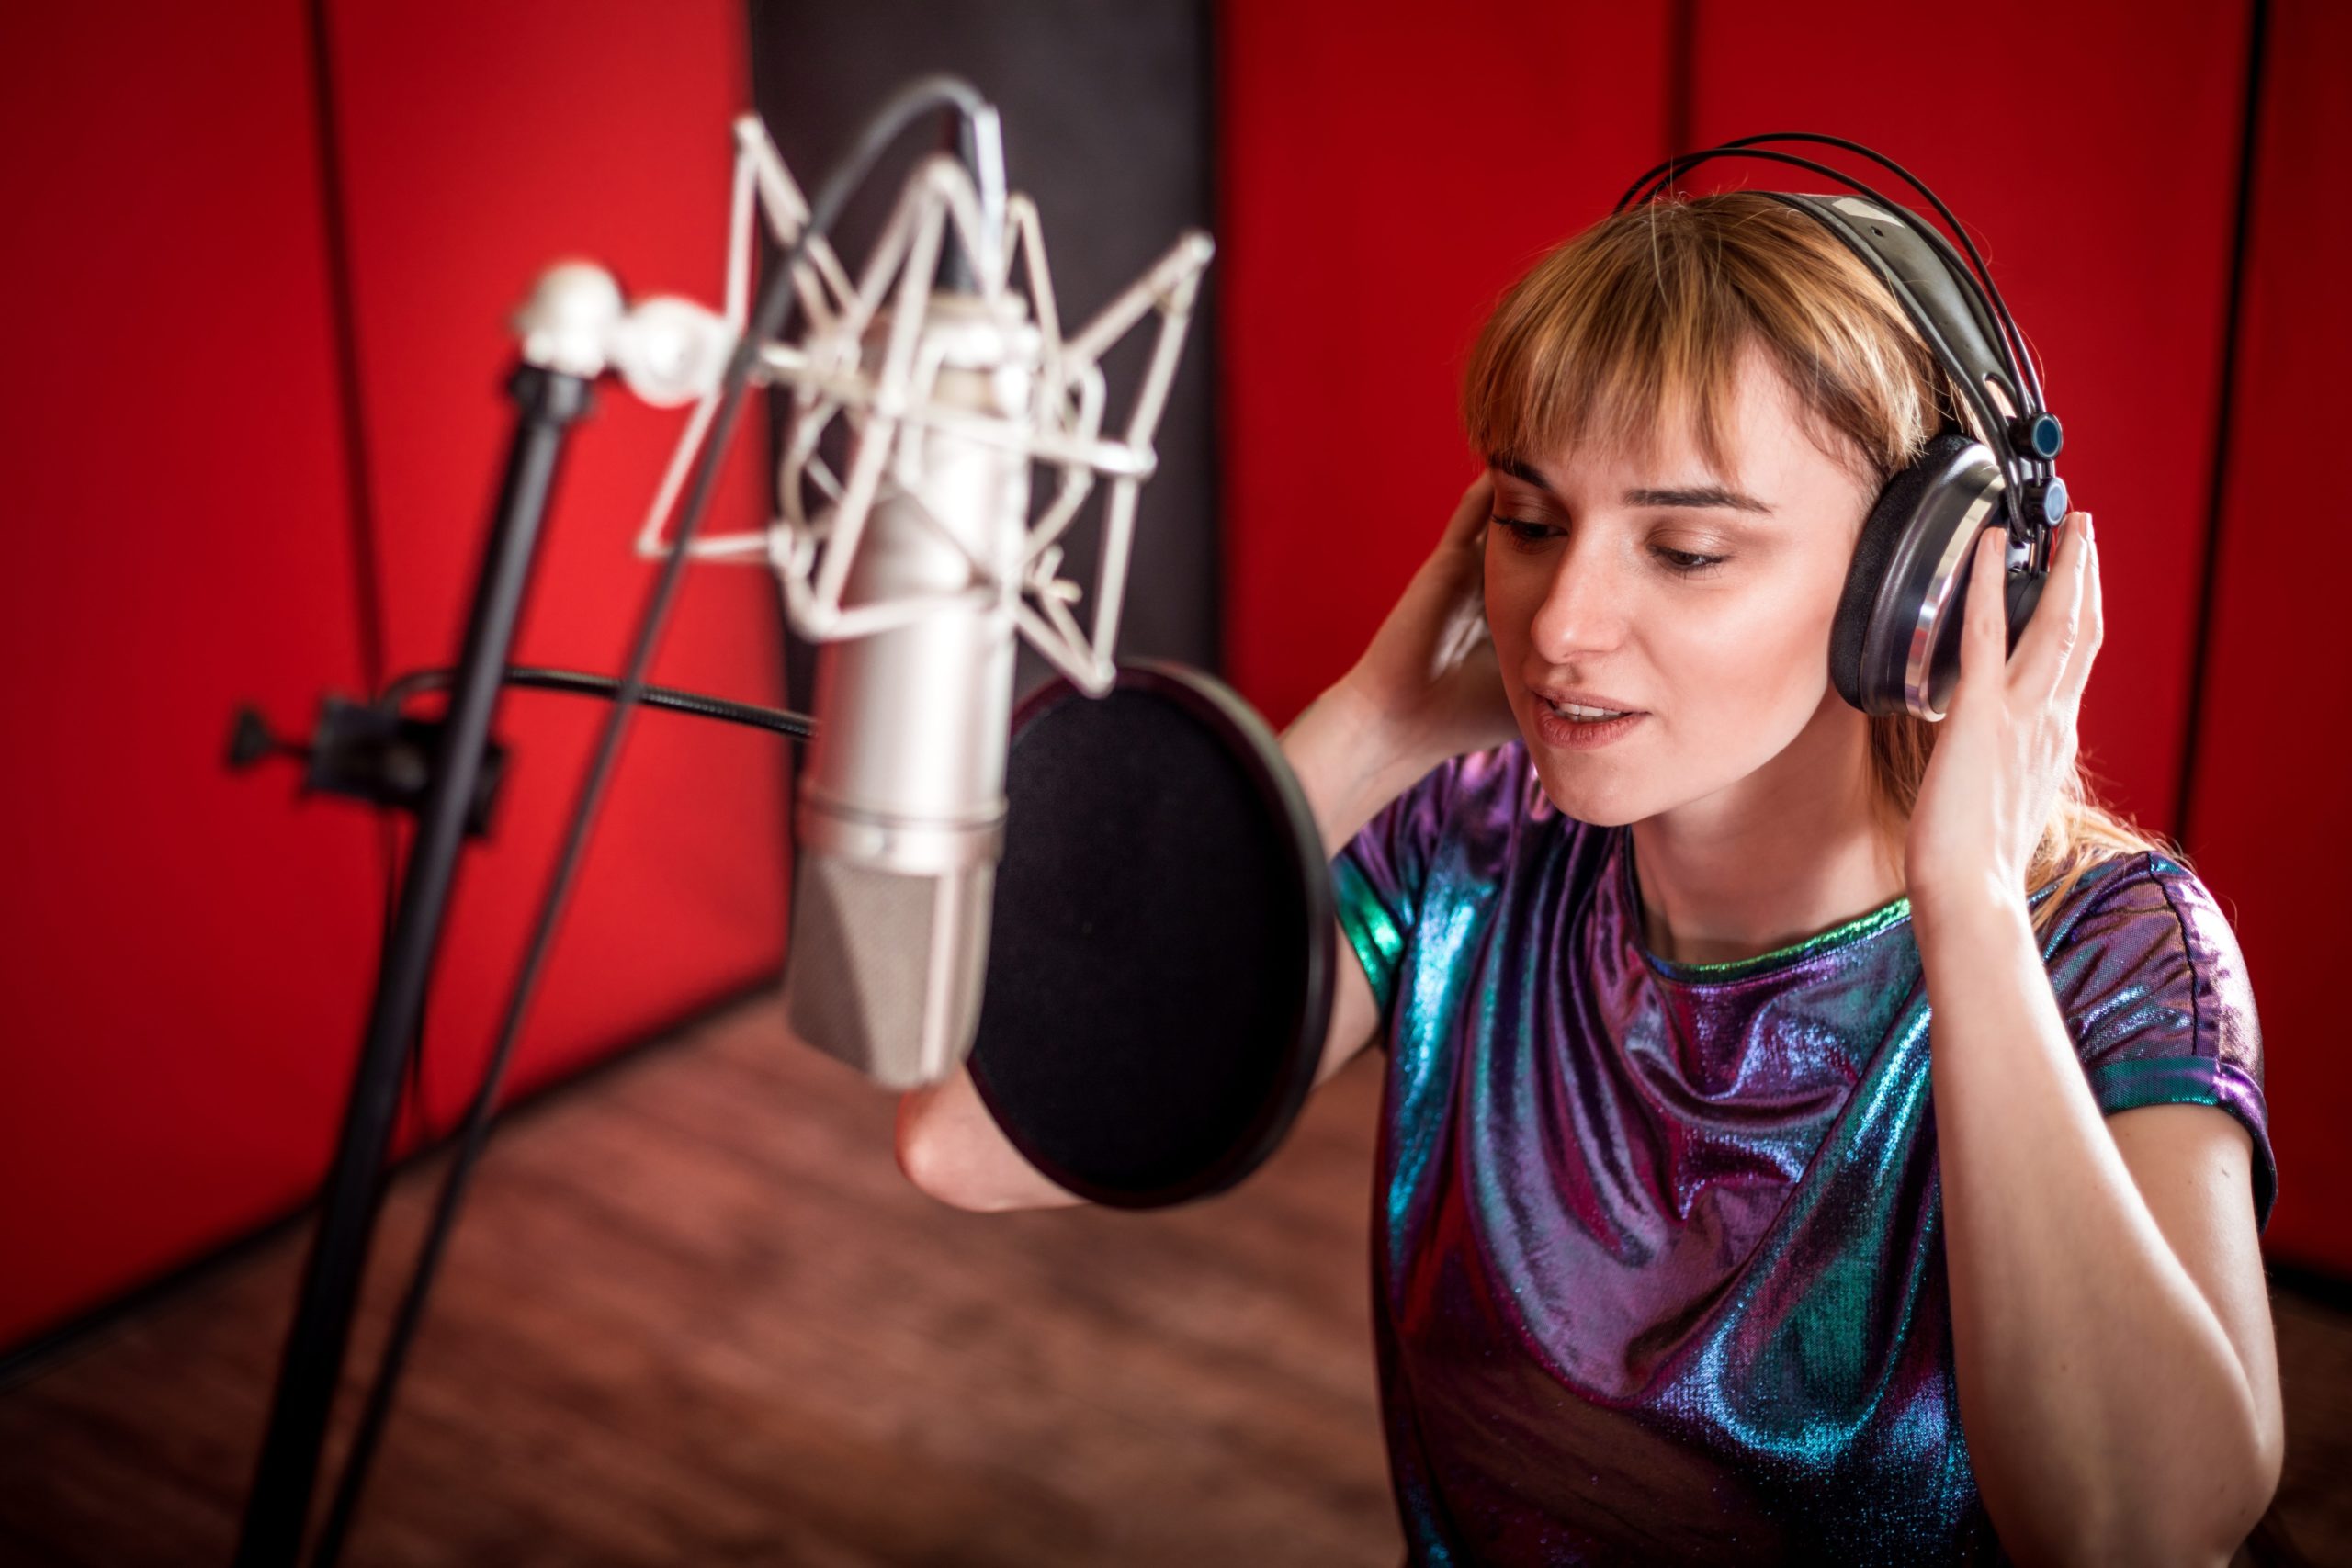 Pretty female singer recording voice in sound studio